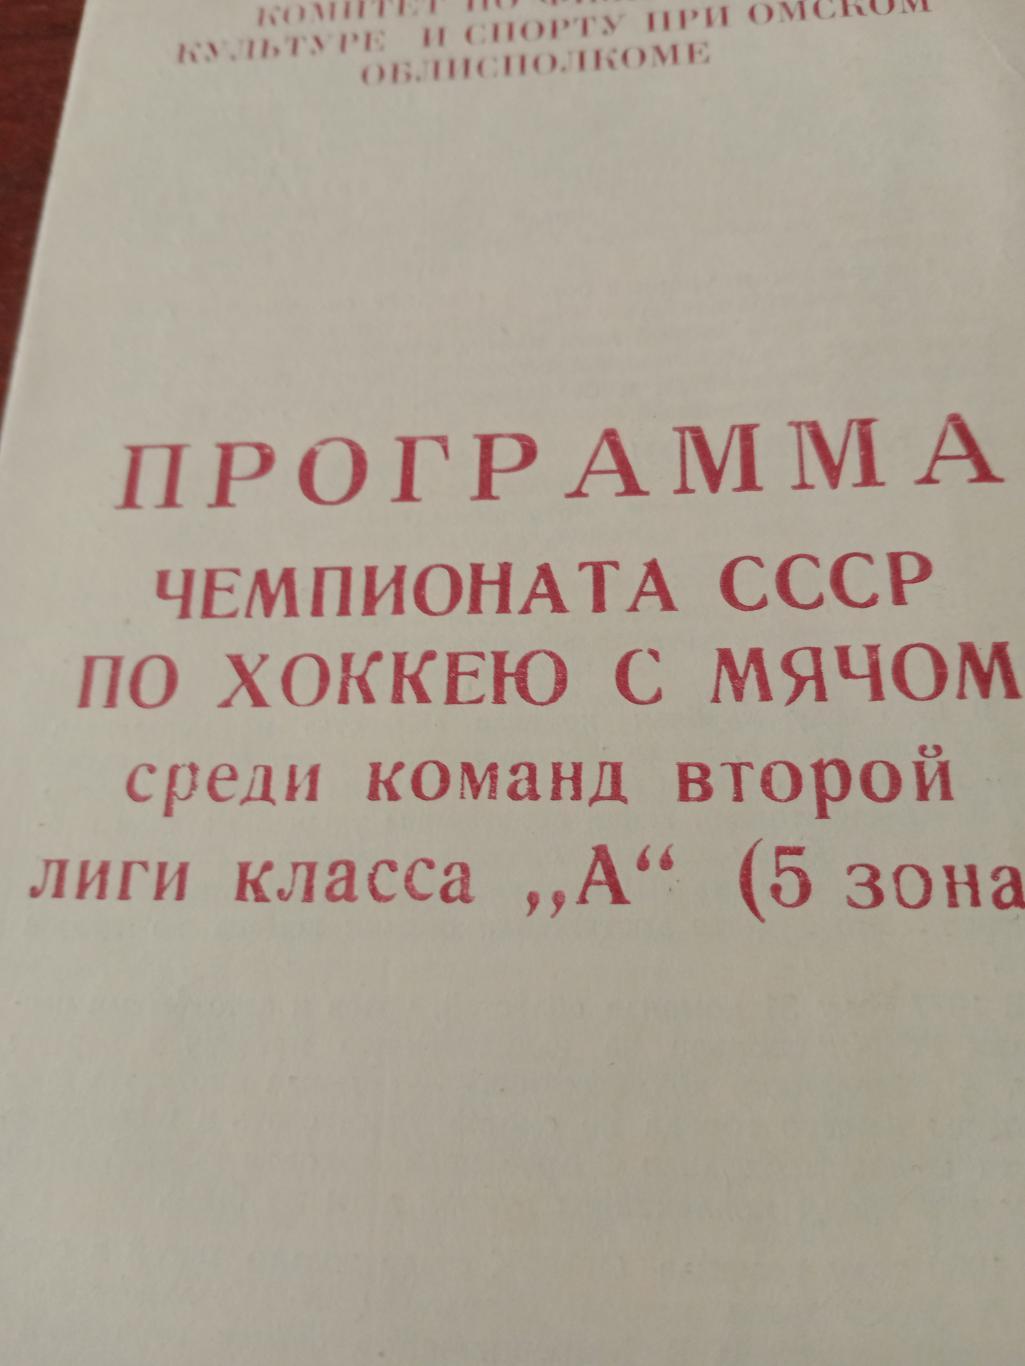 Зональный турнир. Вторая лига. Омск. 1985 год